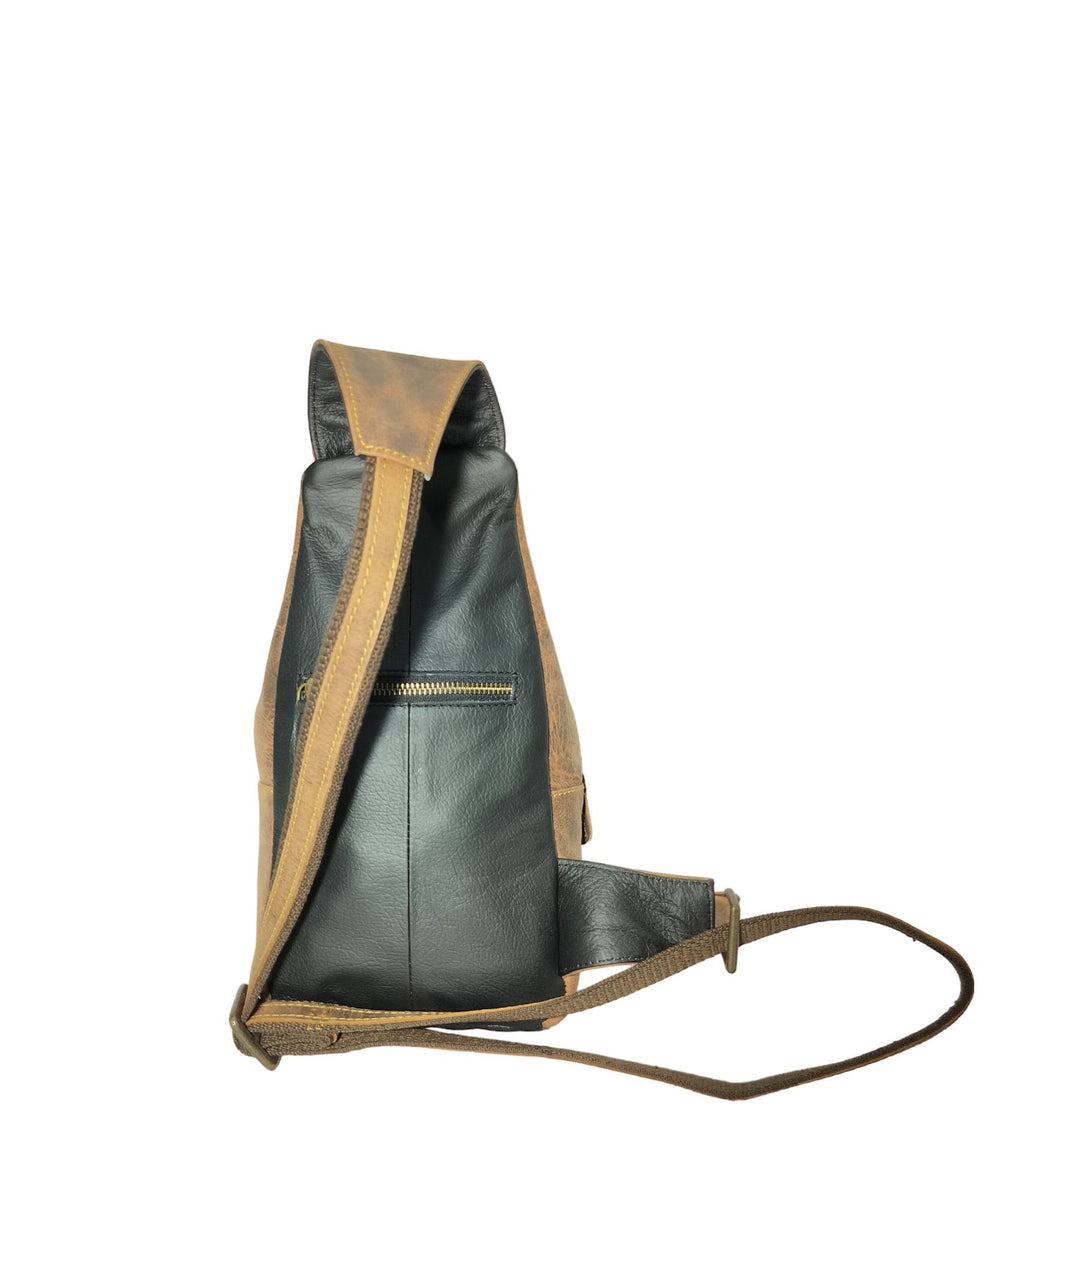 Buy Gaffney Sling Bag leather travel case 